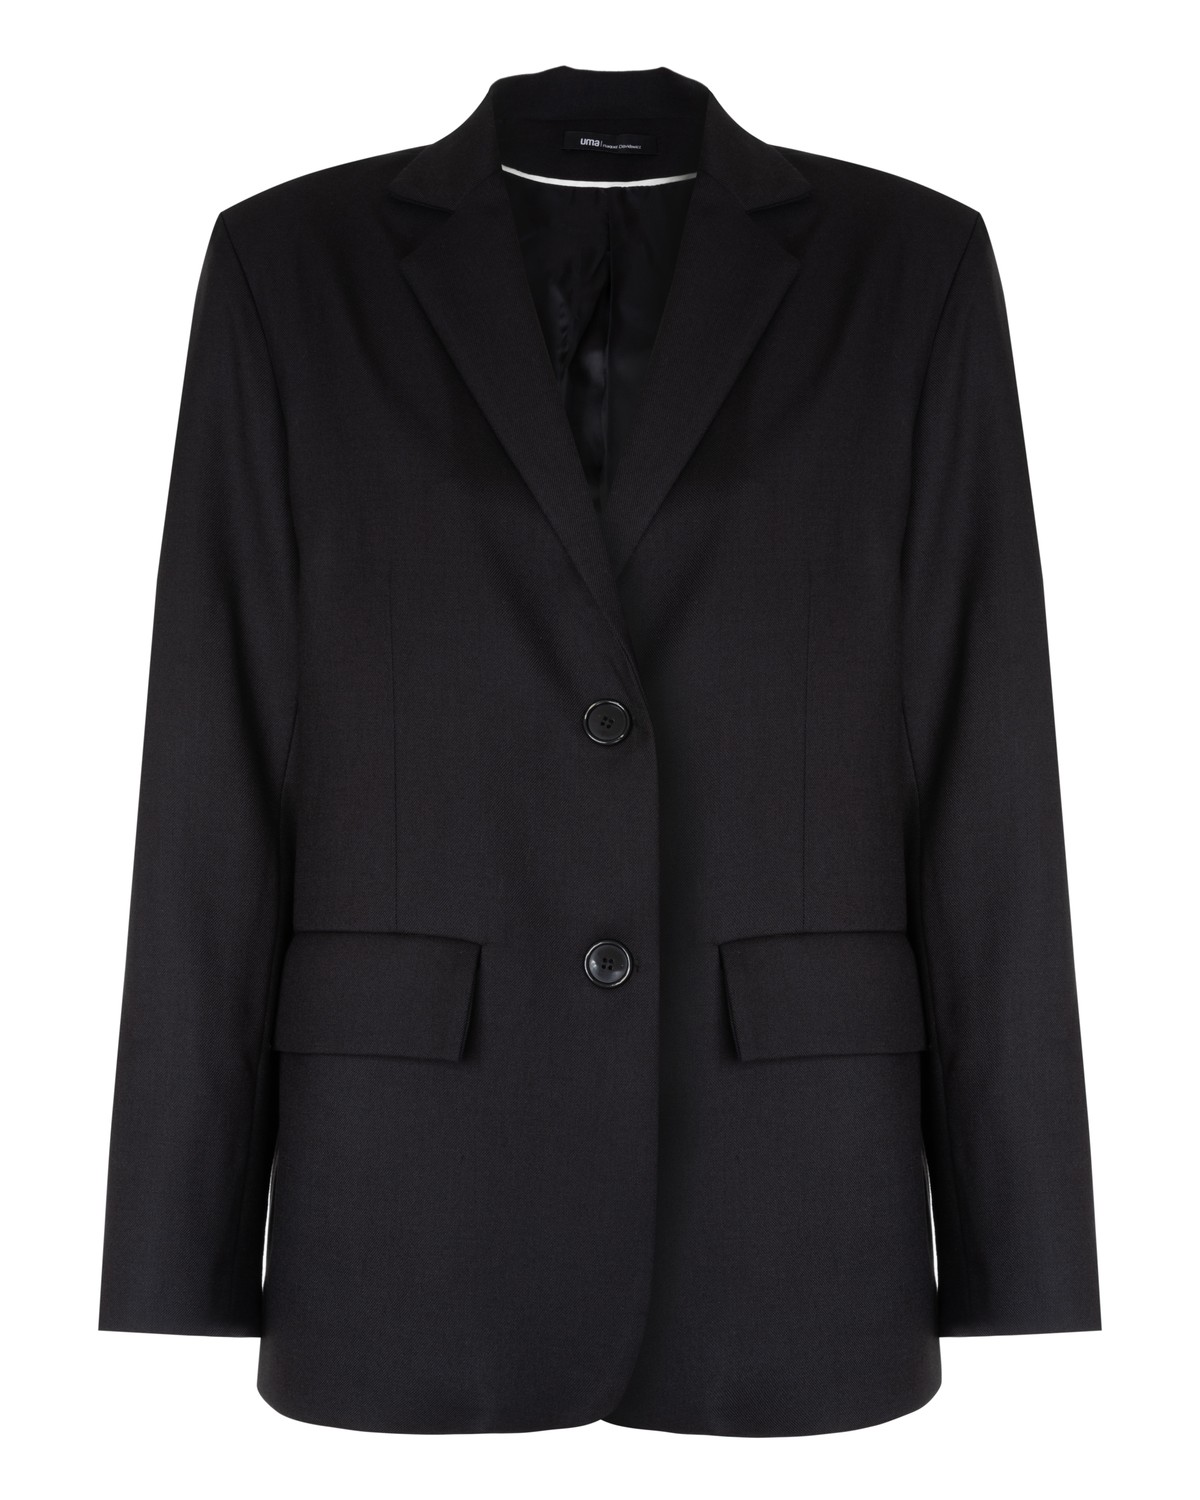 blazer oversized com bolsos | oversized blazer with pockets